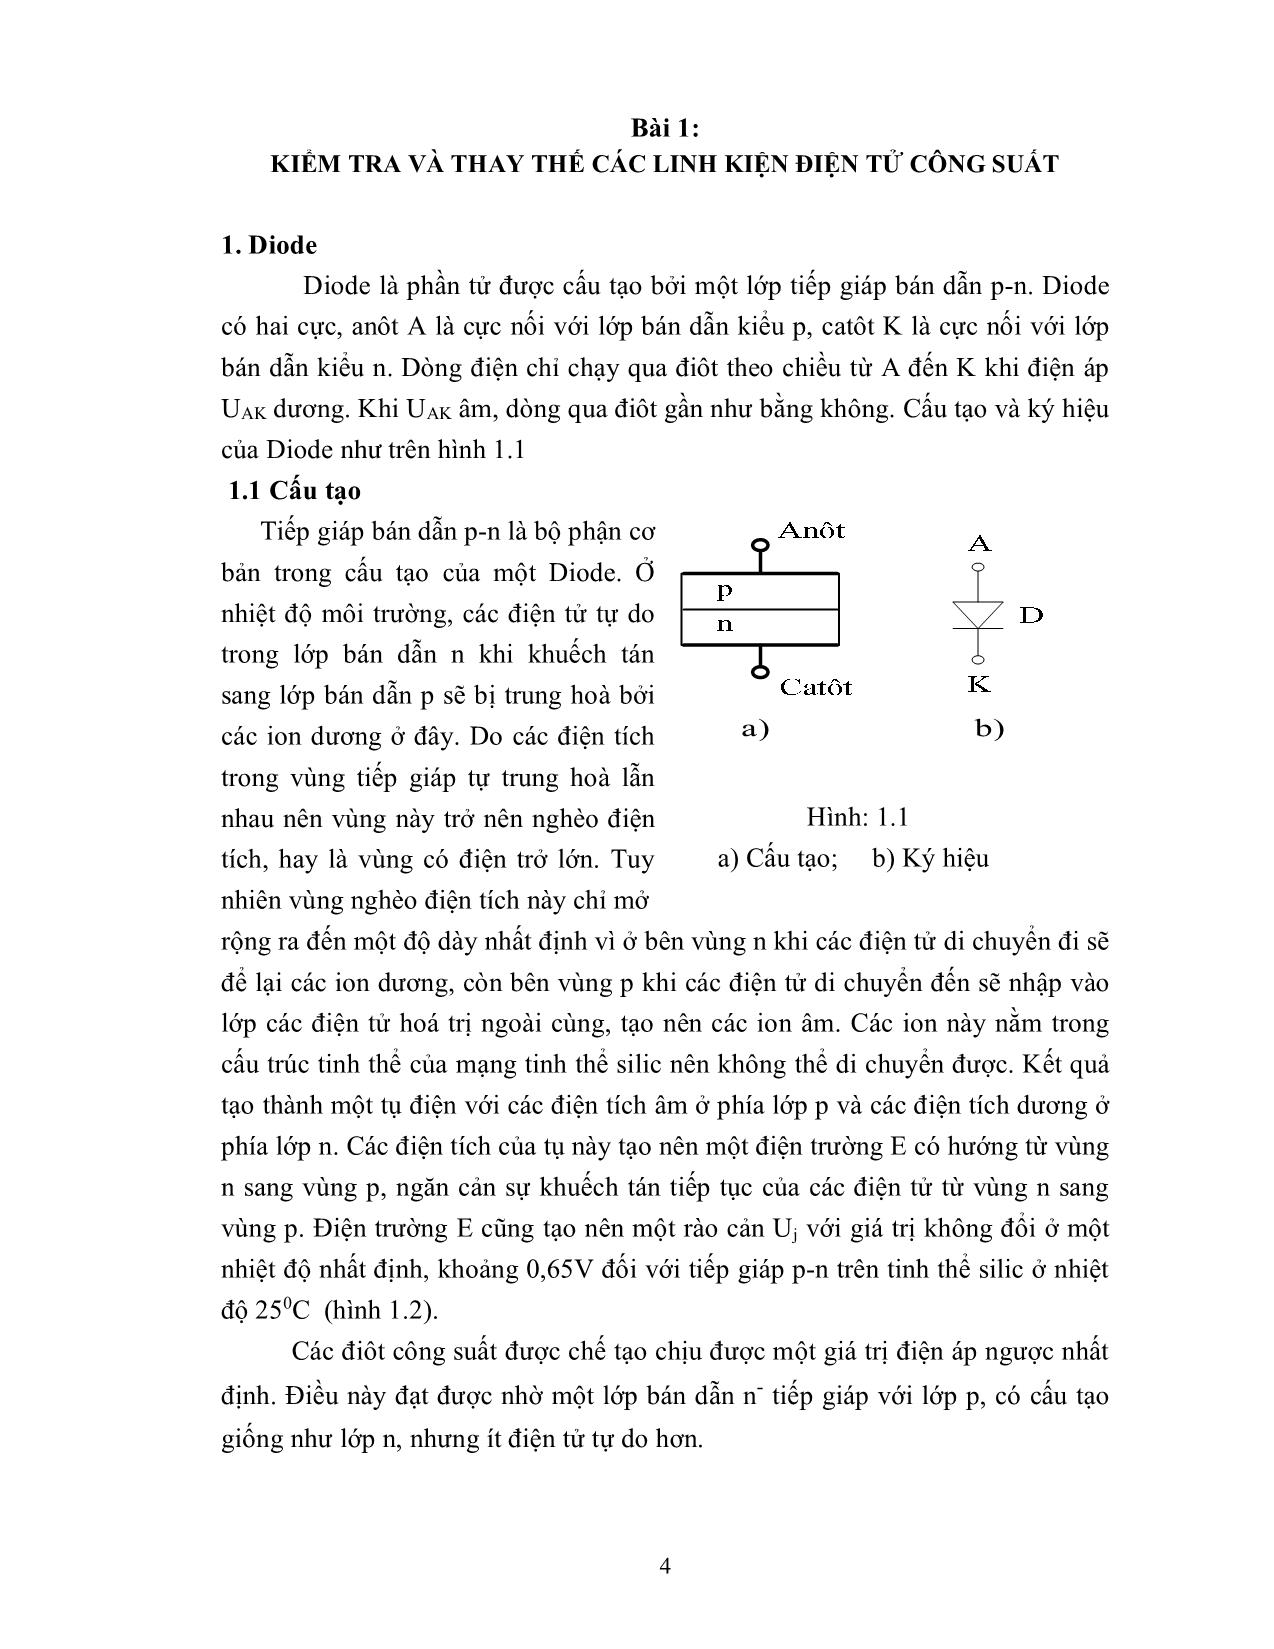 Bài giảng mô đun Lắp mạch điện tử công suất trang 4